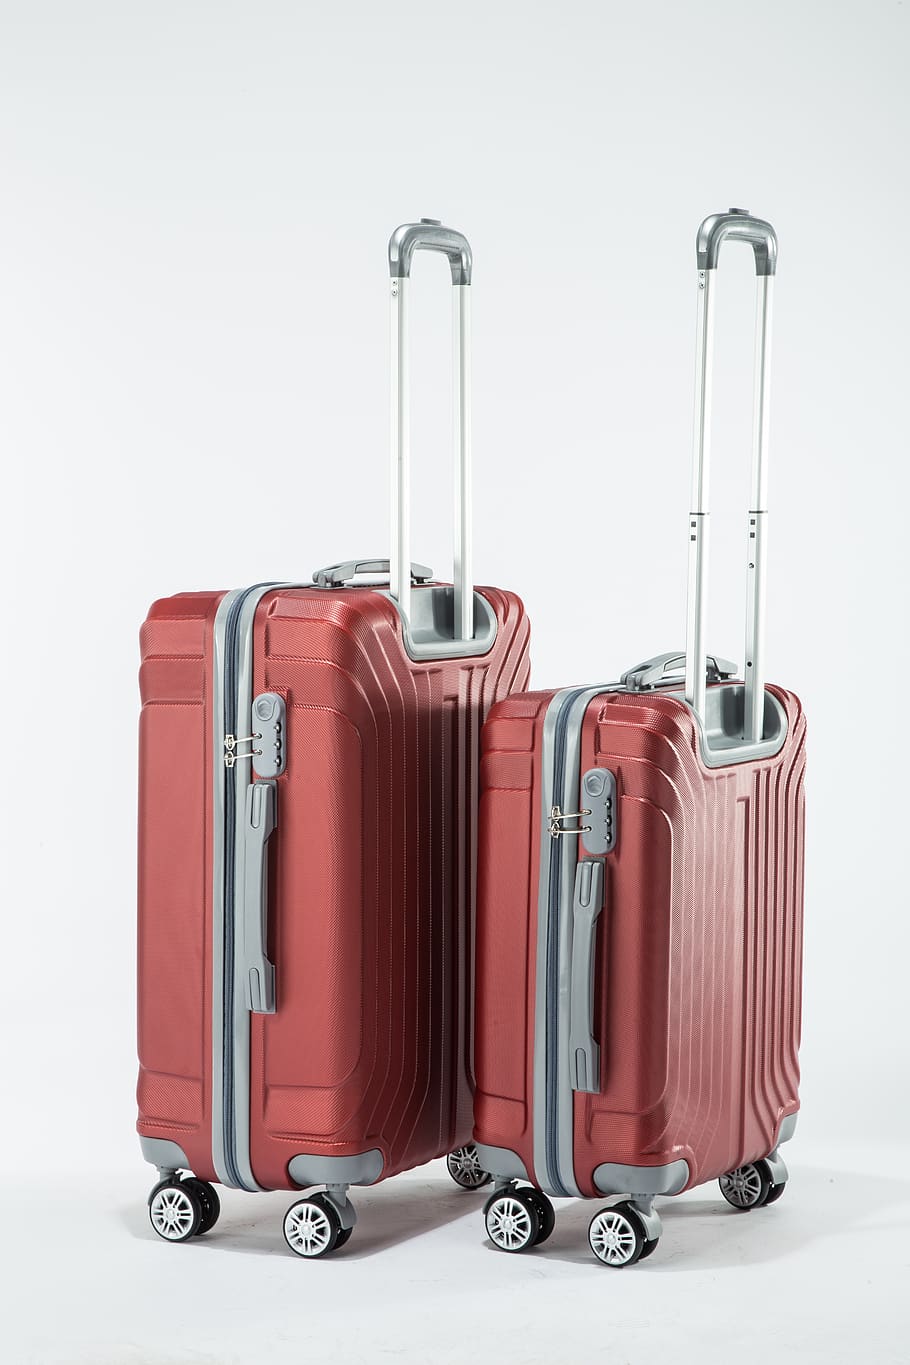 Hình ảnh về chiếc túi du lịch cứng bằng nhựa, chứa đựng nhiều tiện nghi như vali, nội thất và chụp phòng studio sẽ khiến bạn chao đảo bởi sự linh hoạt và năng động mà sản phẩm mang lại. Hãy để từng chi tiết trên sản phẩm đưa bạn đến những trải nghiệm mới lạ, đầy hứng khởi.